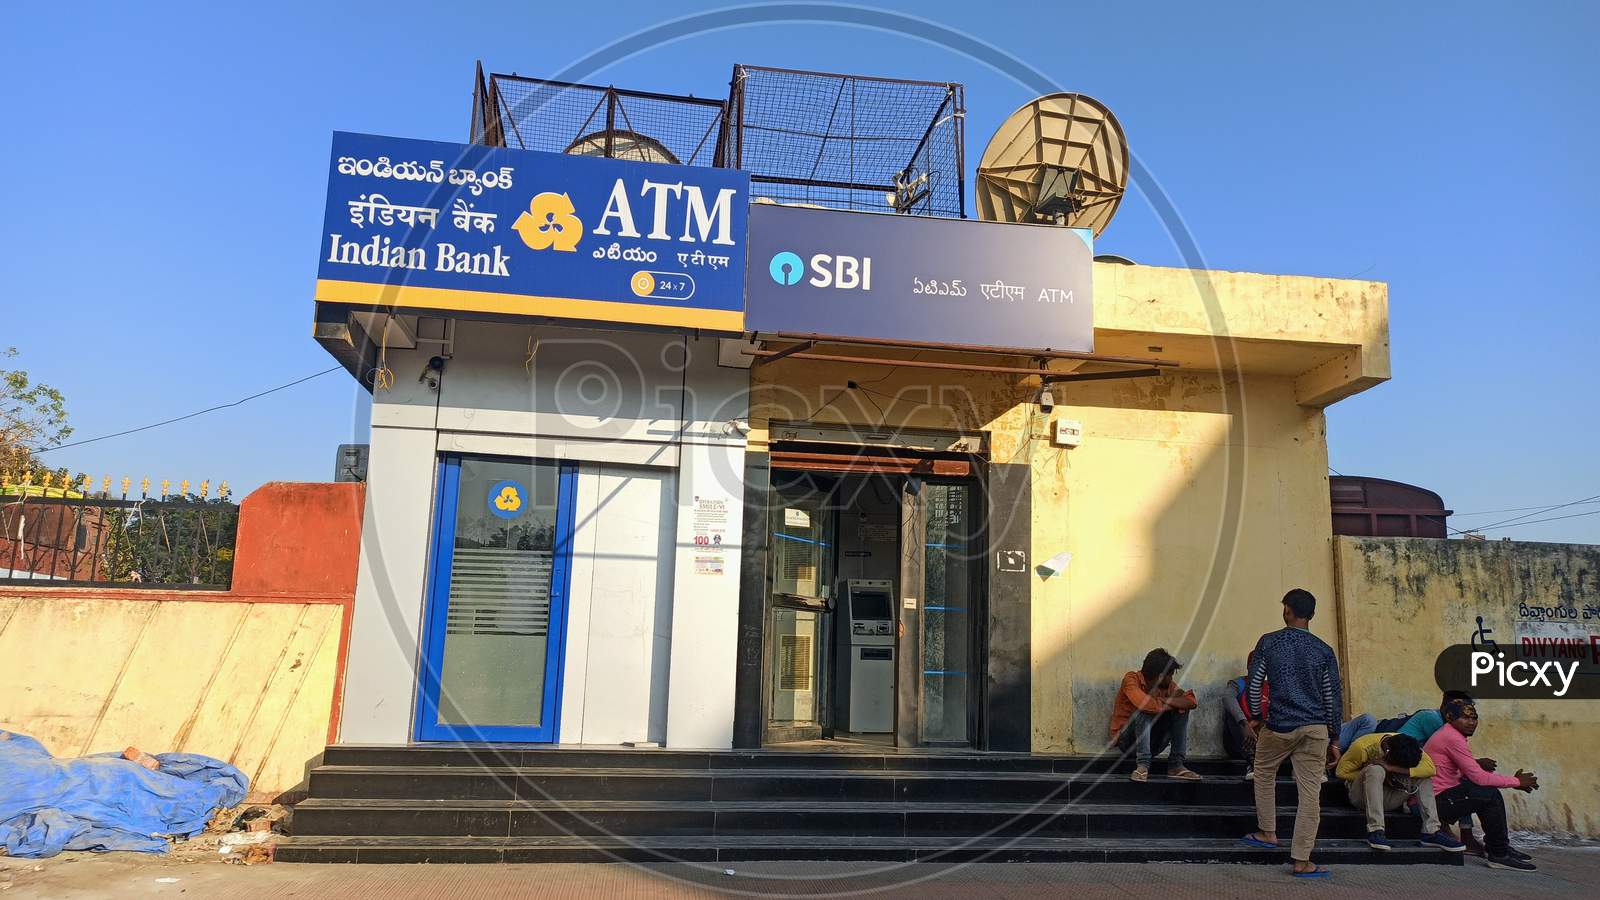 Indian Bank ATM & SBI ATM at Warangal Railway Station